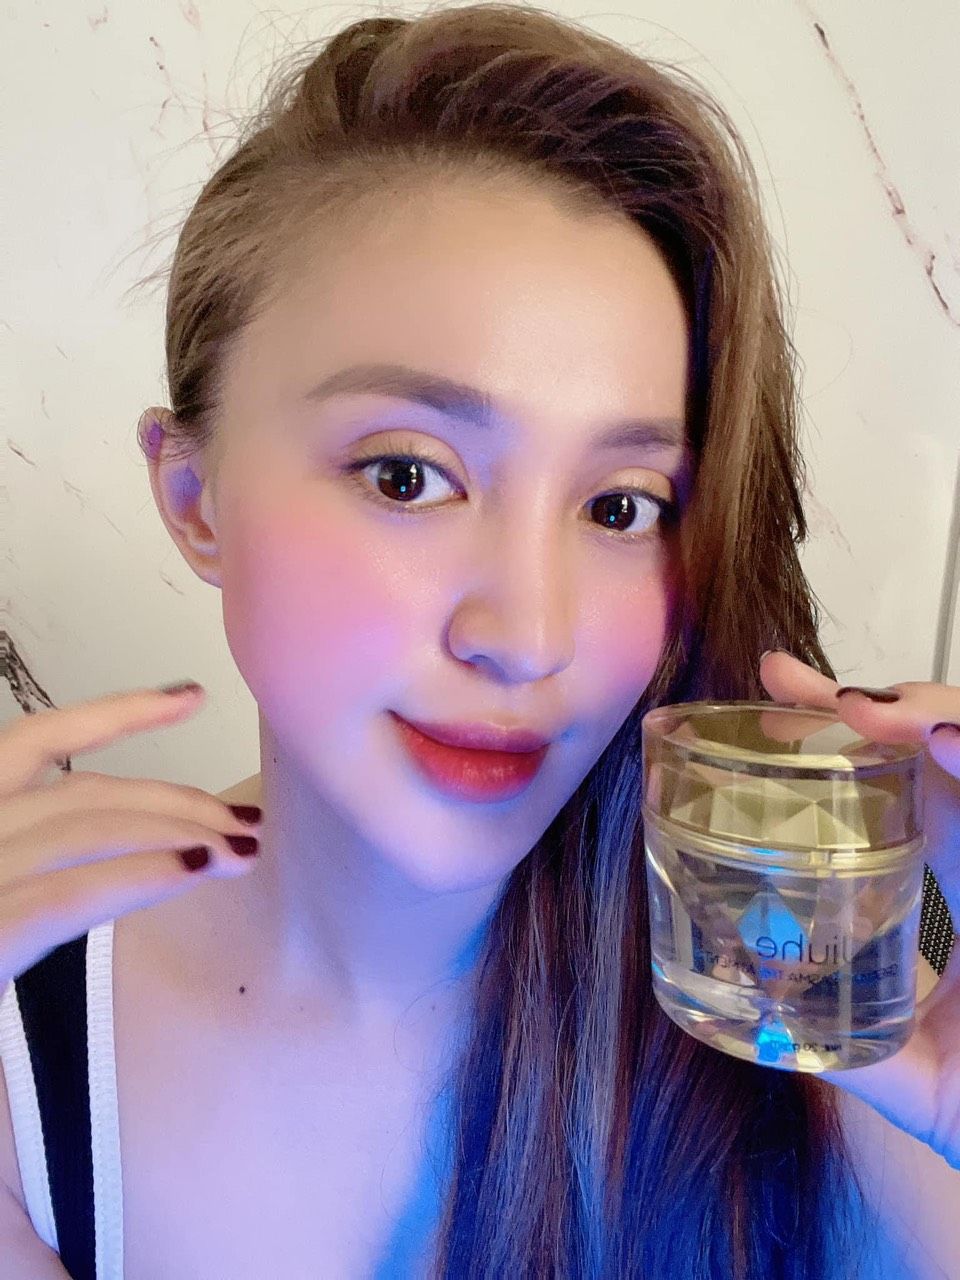 Kem face nám Jiuhe Luxury Thanh Tô Cosmetics Chính Hãng - FACENAM01